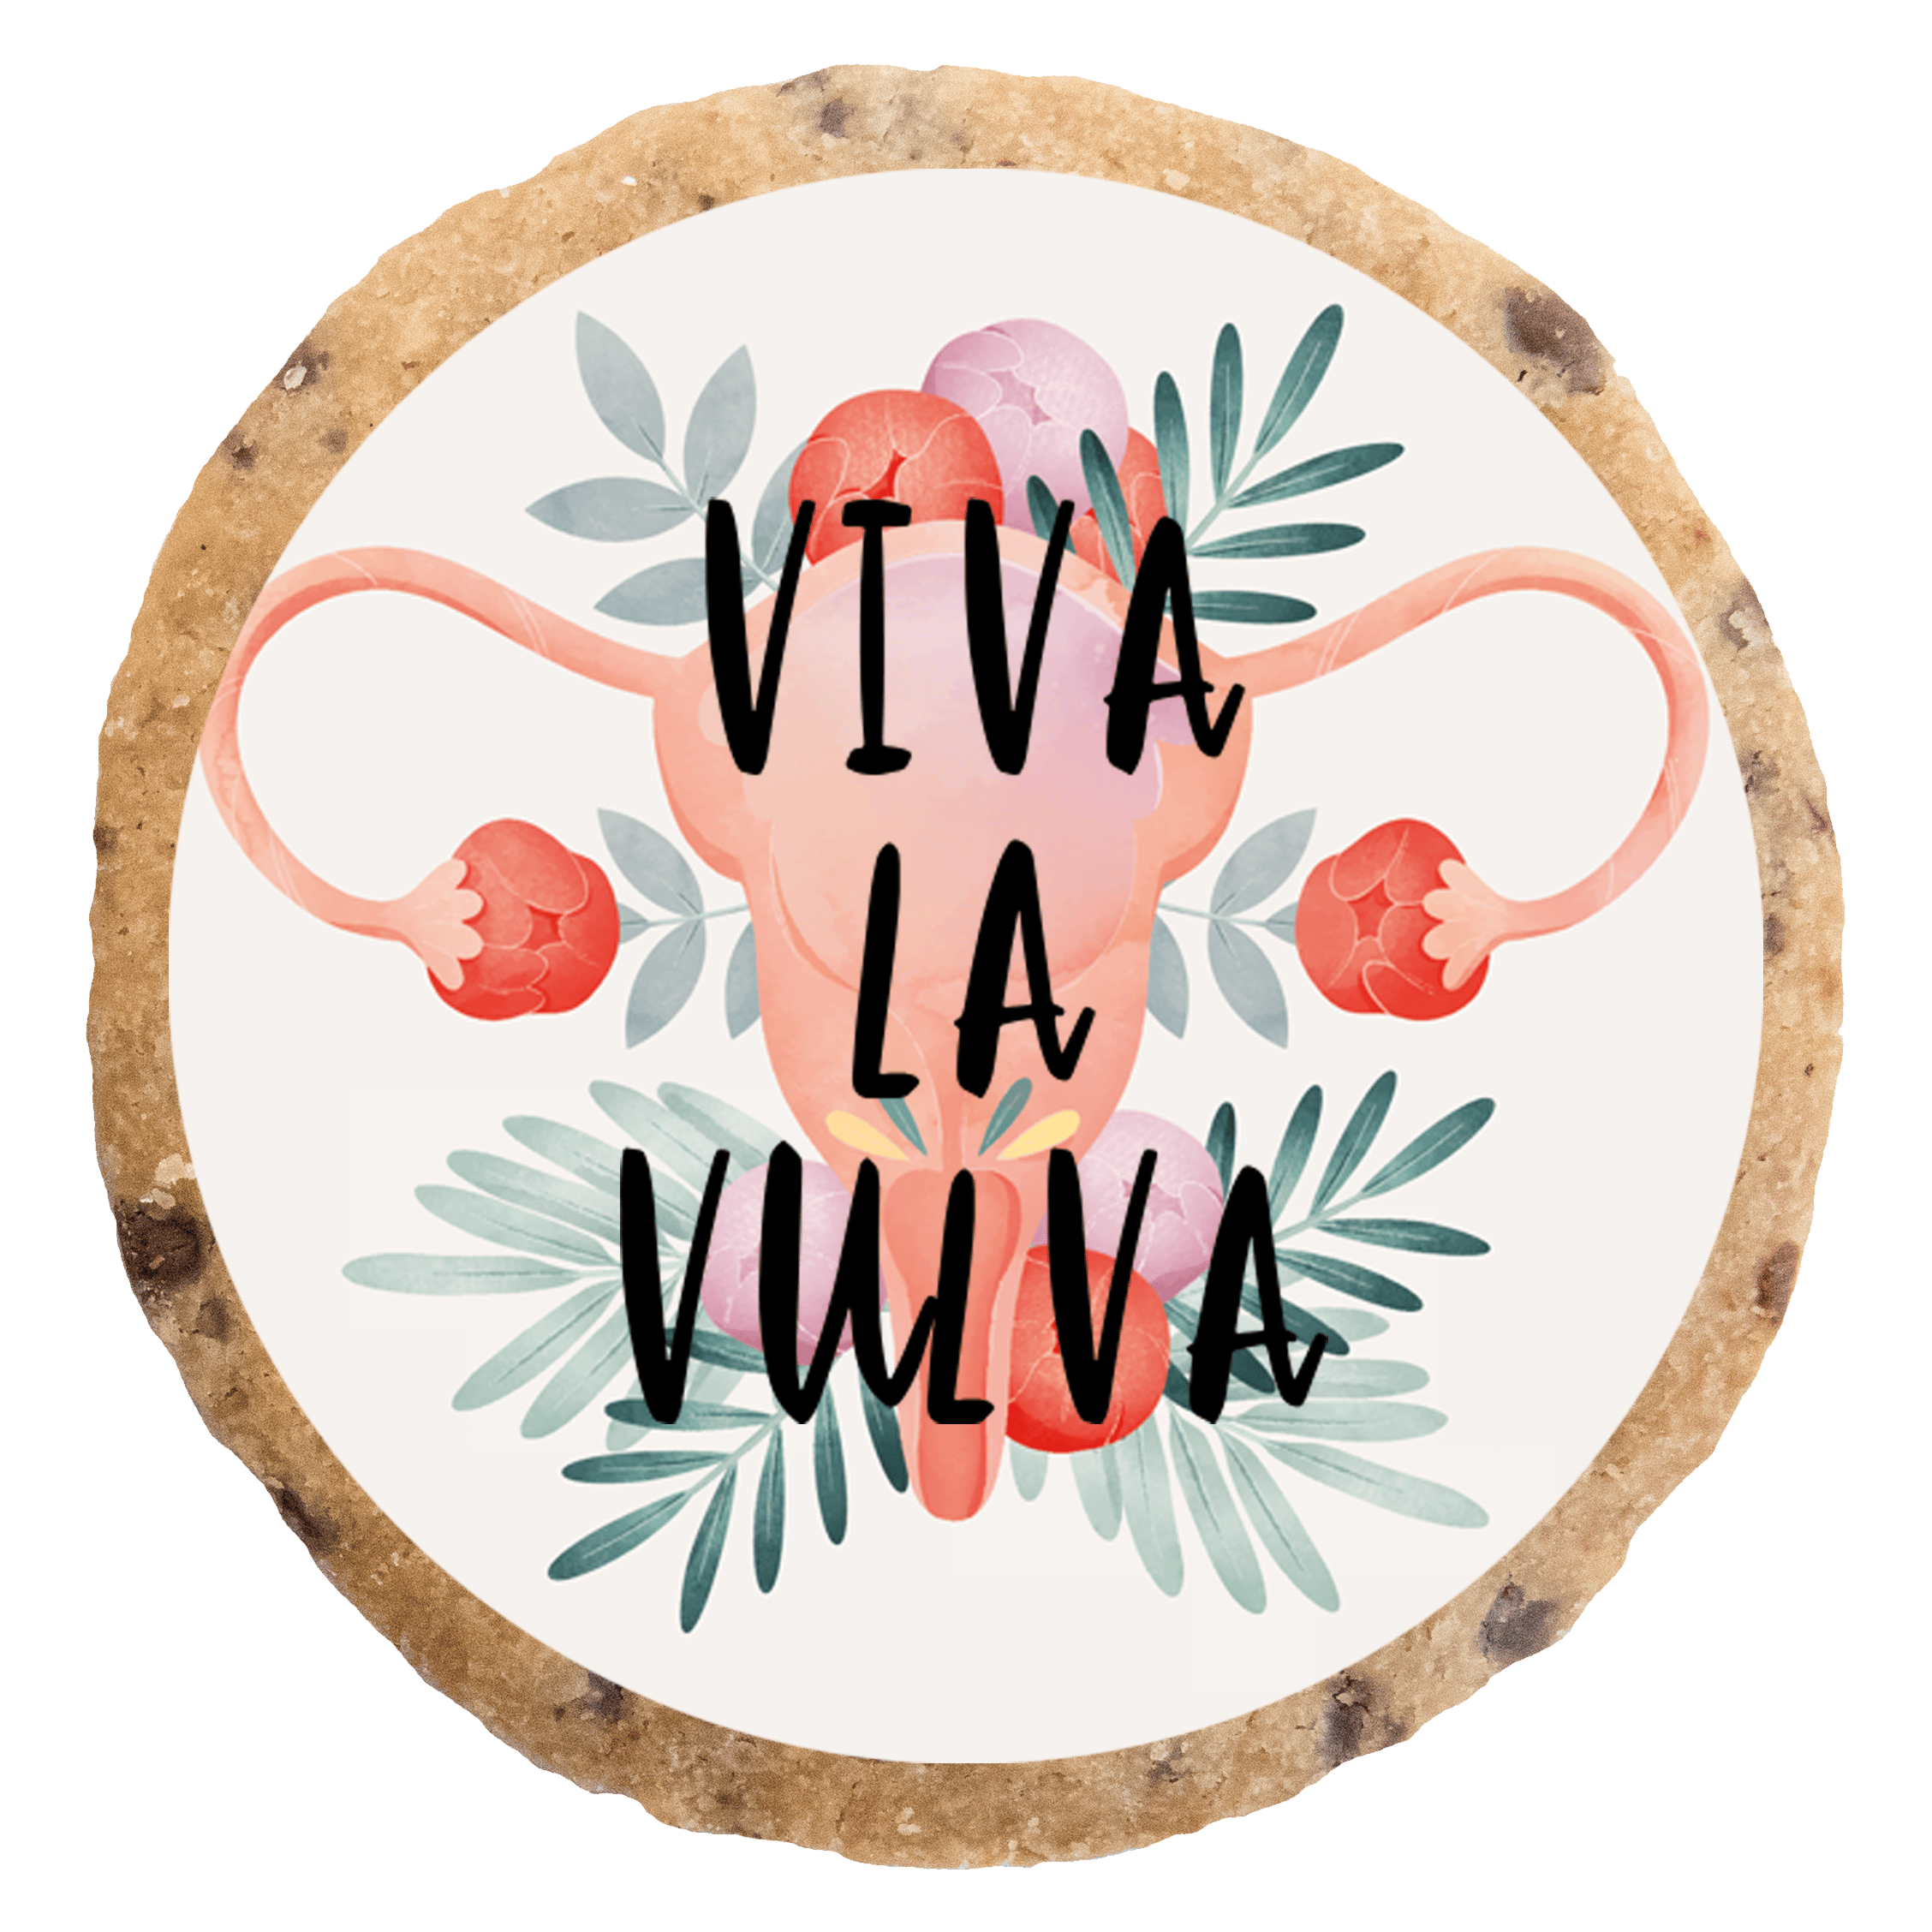 "Viva la vulva" MotivKEKS